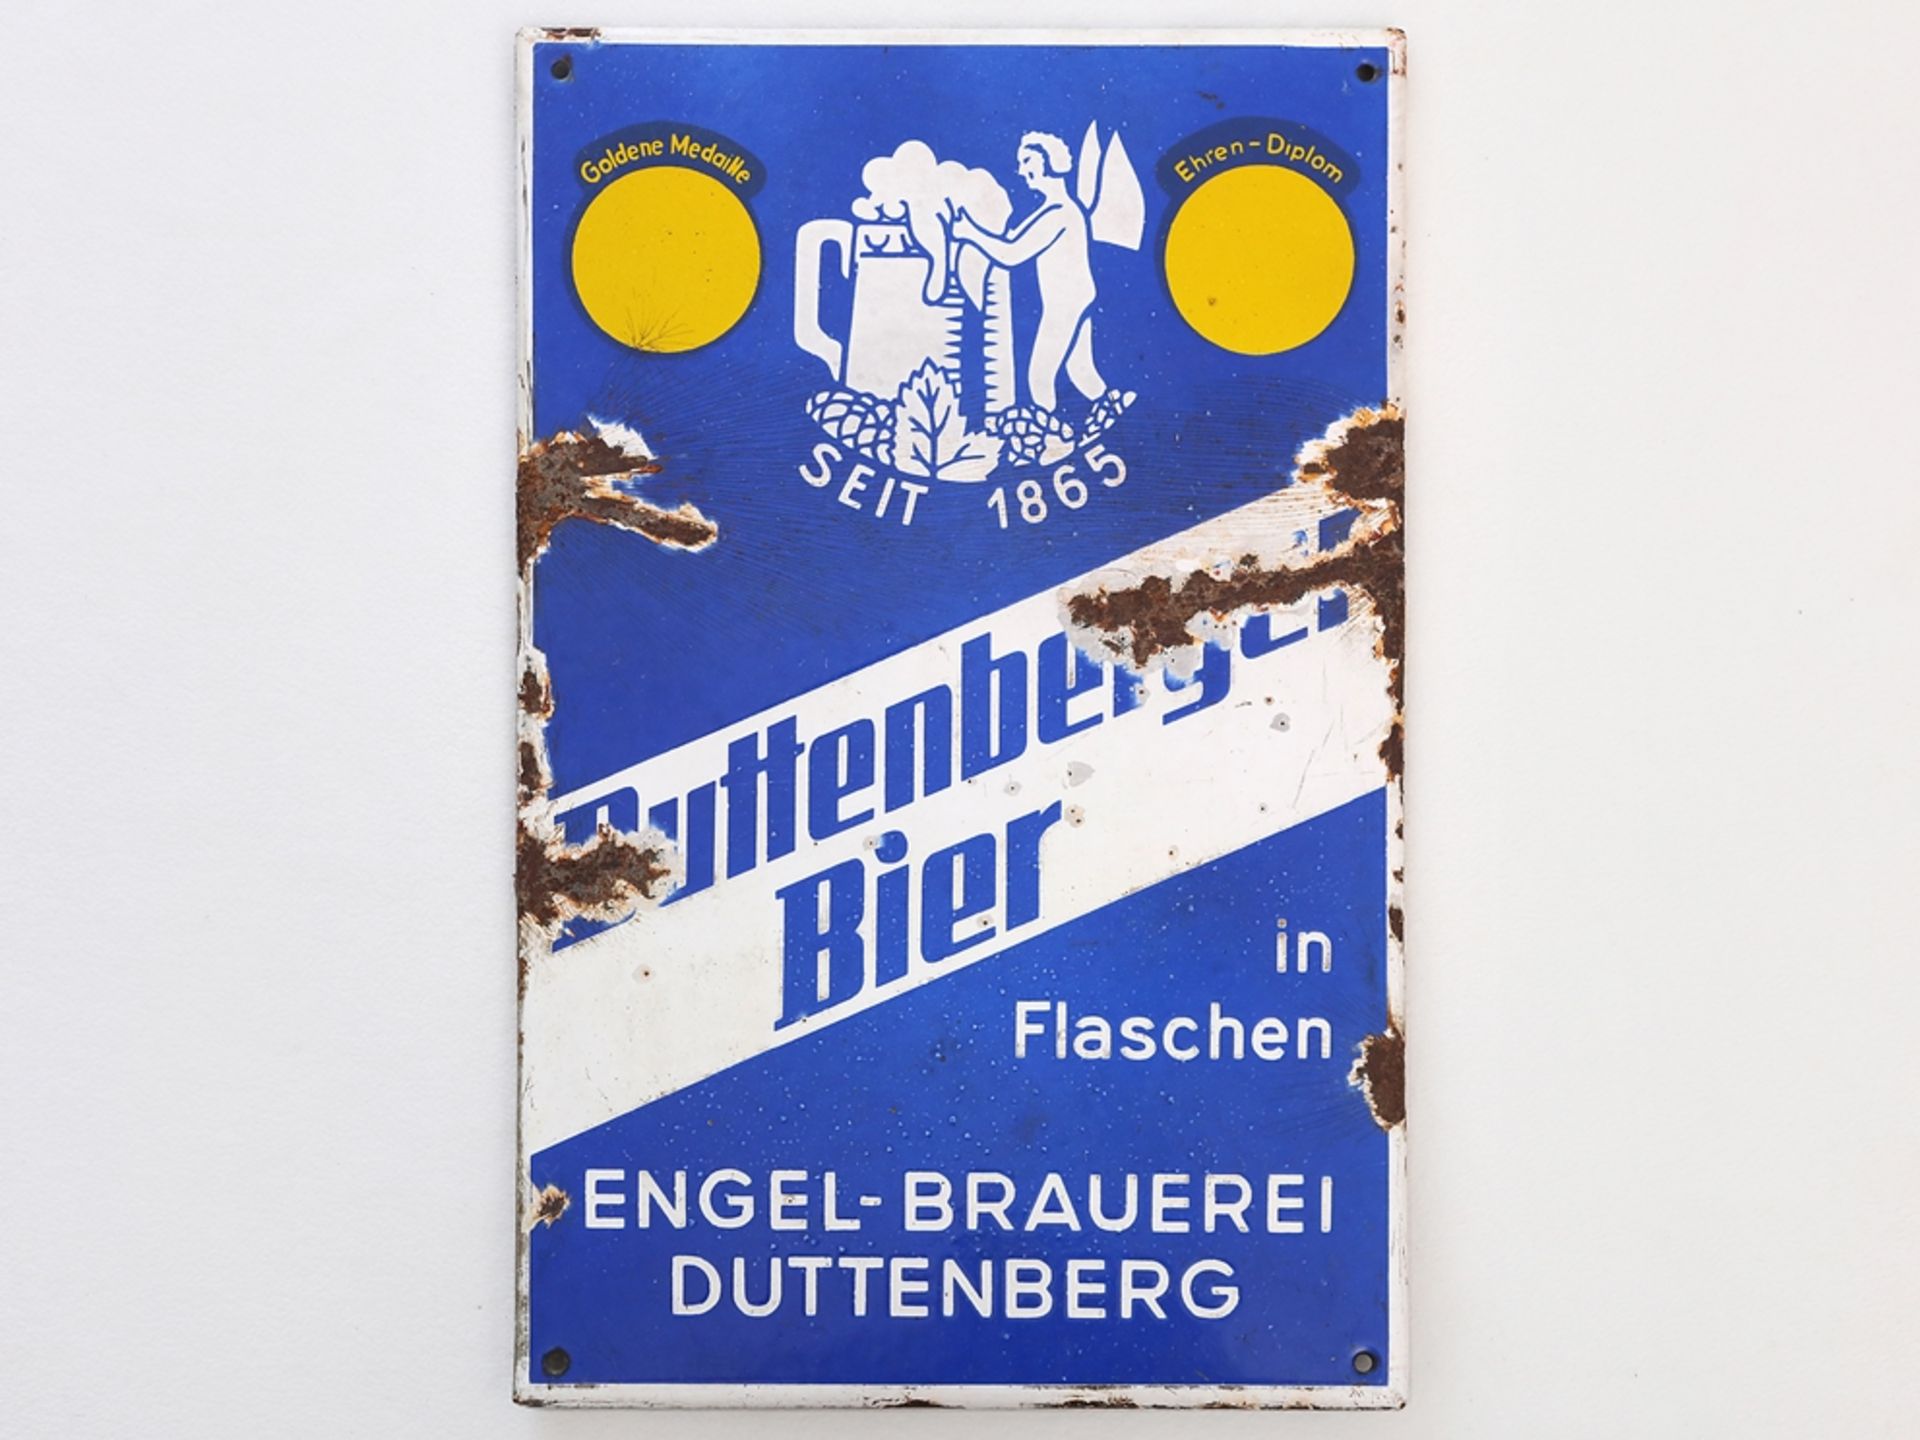 Enamel sign Engel Brauerei Duttenberg, Bad Friedrichshall, around 1930 - Image 7 of 7